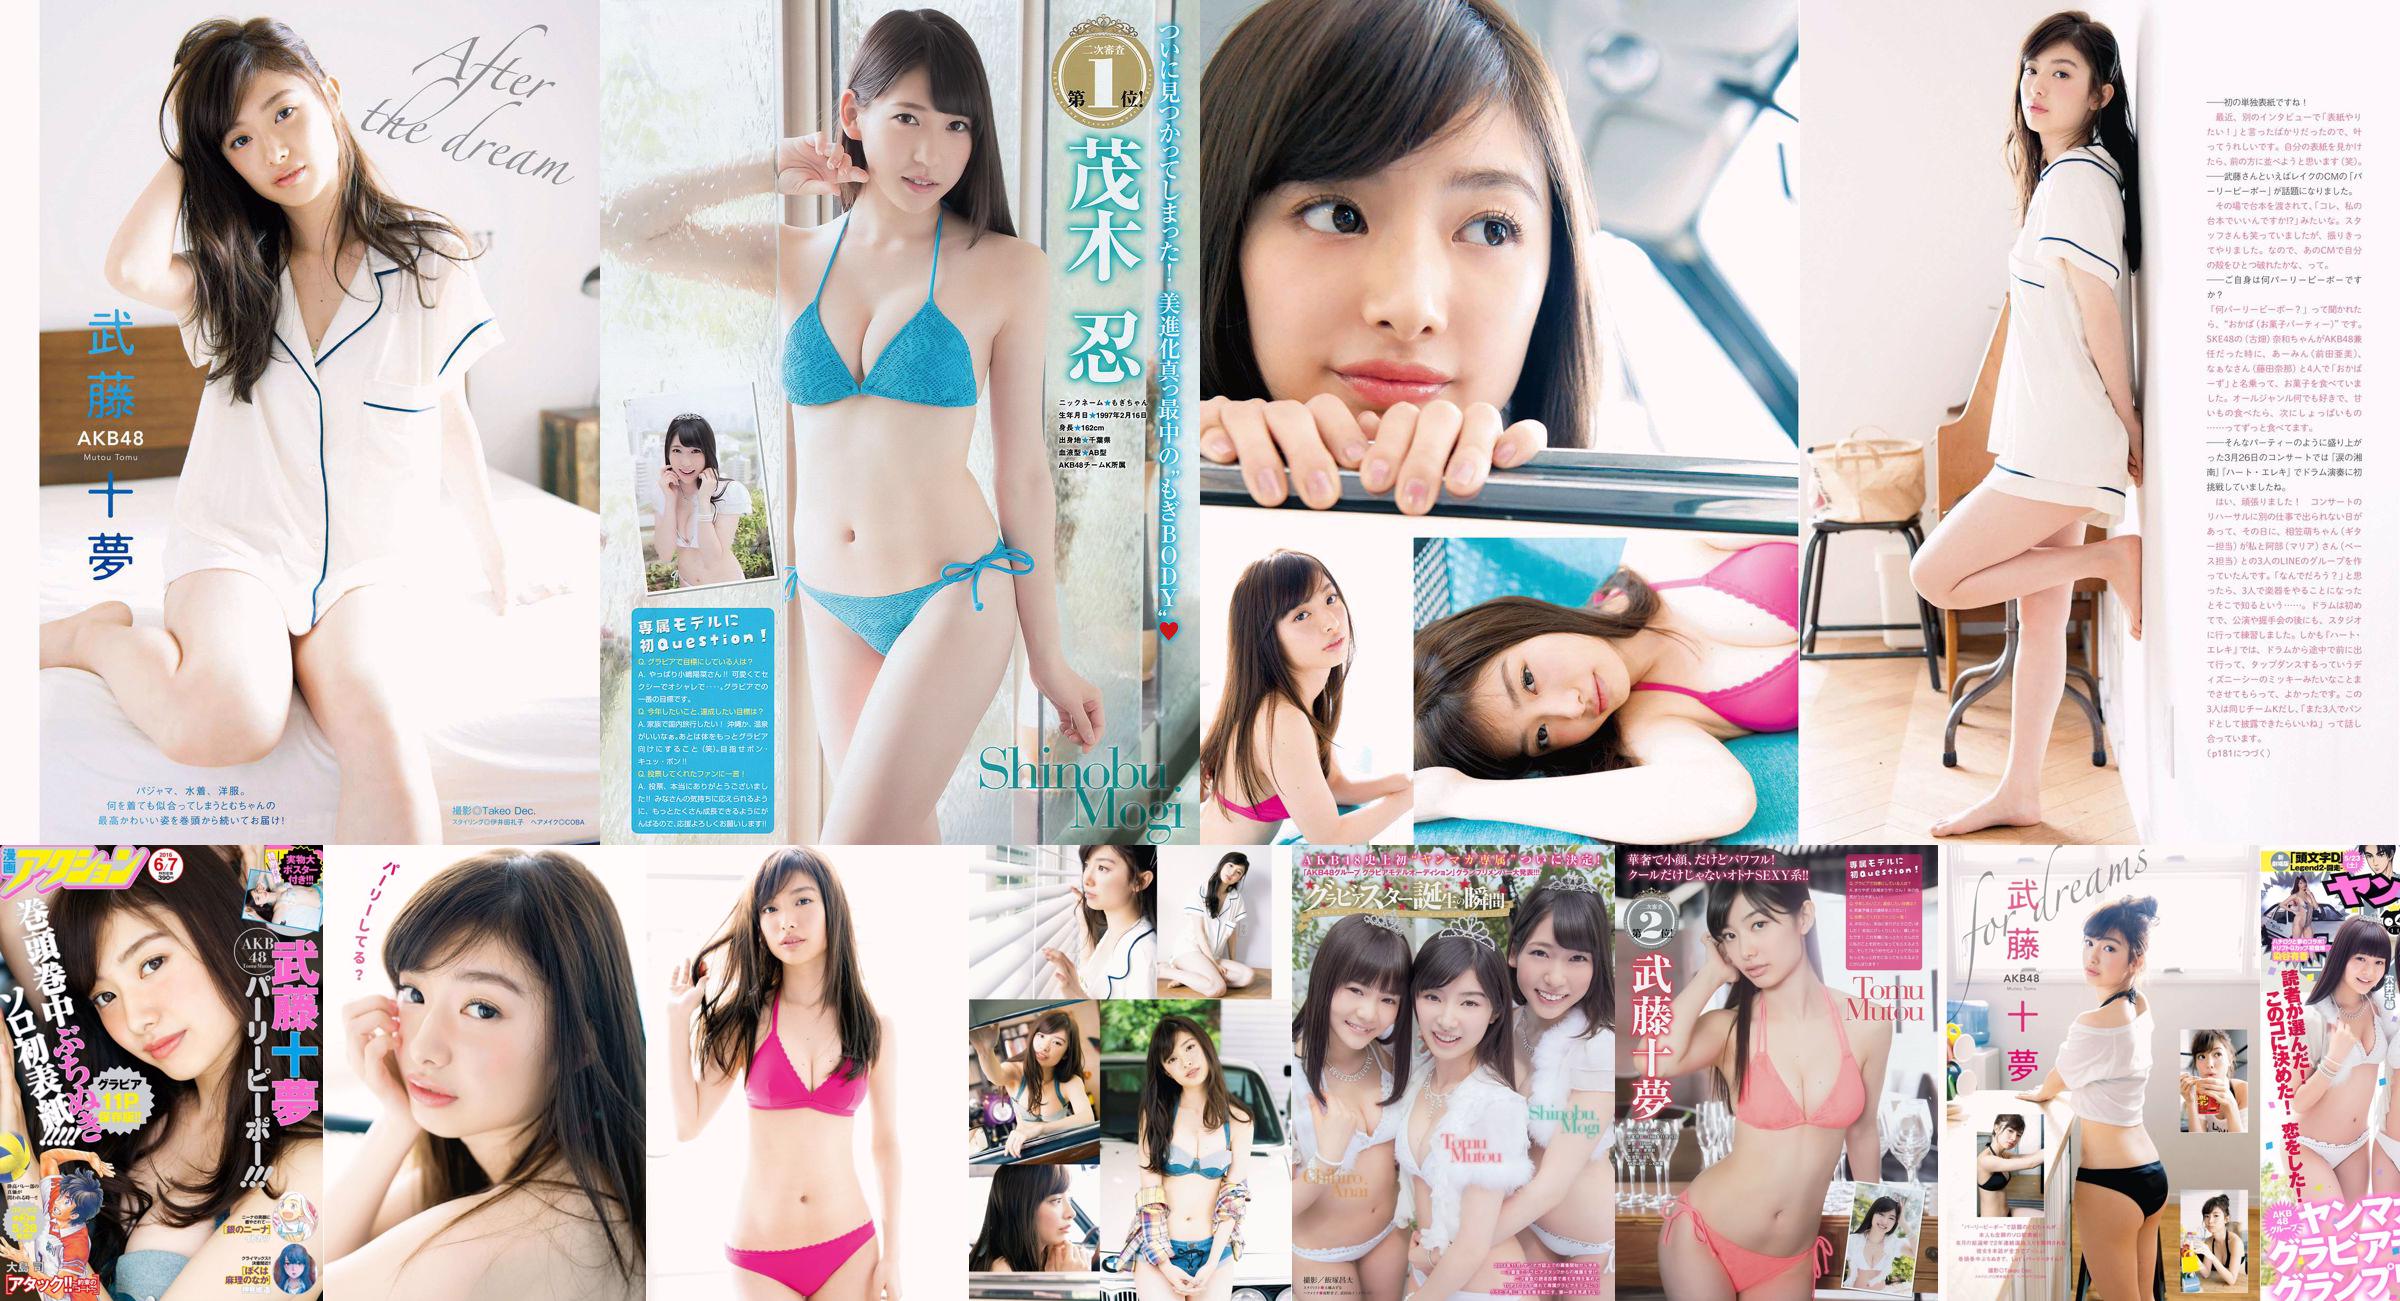 [Young Magazine] Tomu Muto Shinobu Mogi Chihiro Anai Erina Mano Yuka Someya 2015 No.25 Photograph No.58eaf5 Page 1